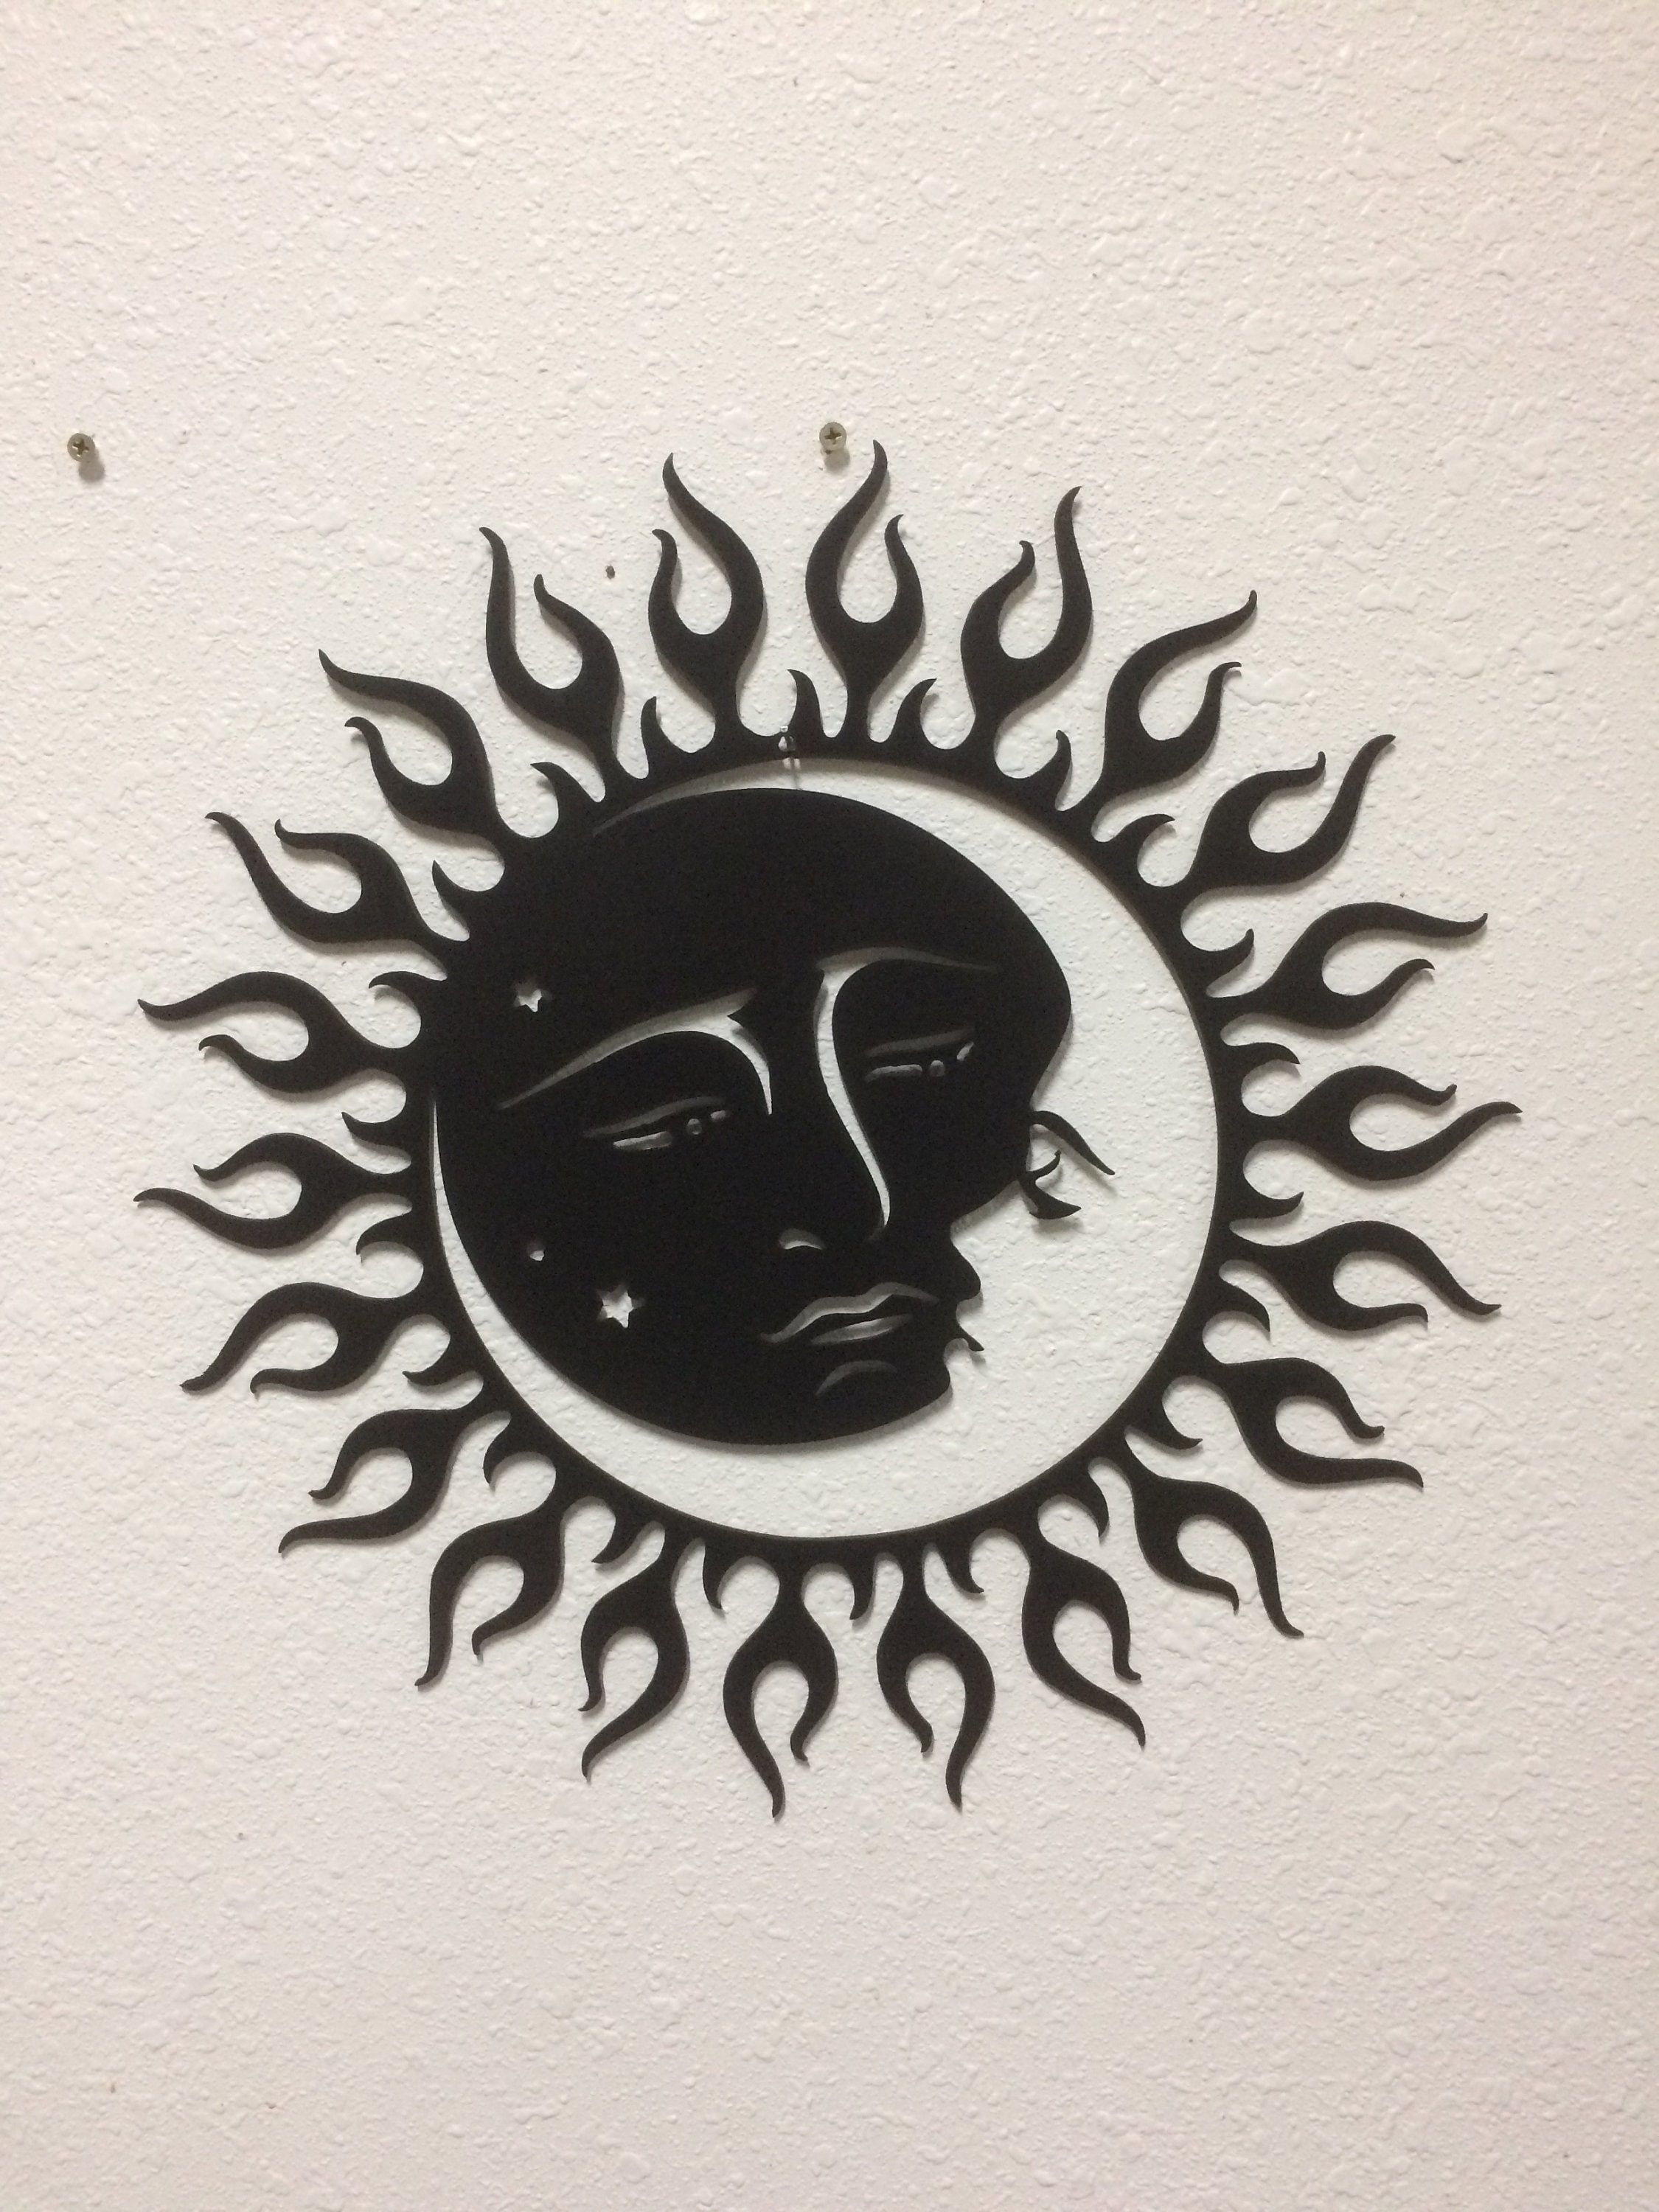 Sun Moon Stars Metal Art Wall Art Home Decor Garden Art – Etsy Regarding Latest Sun Moon Star Wall Art (View 15 of 20)